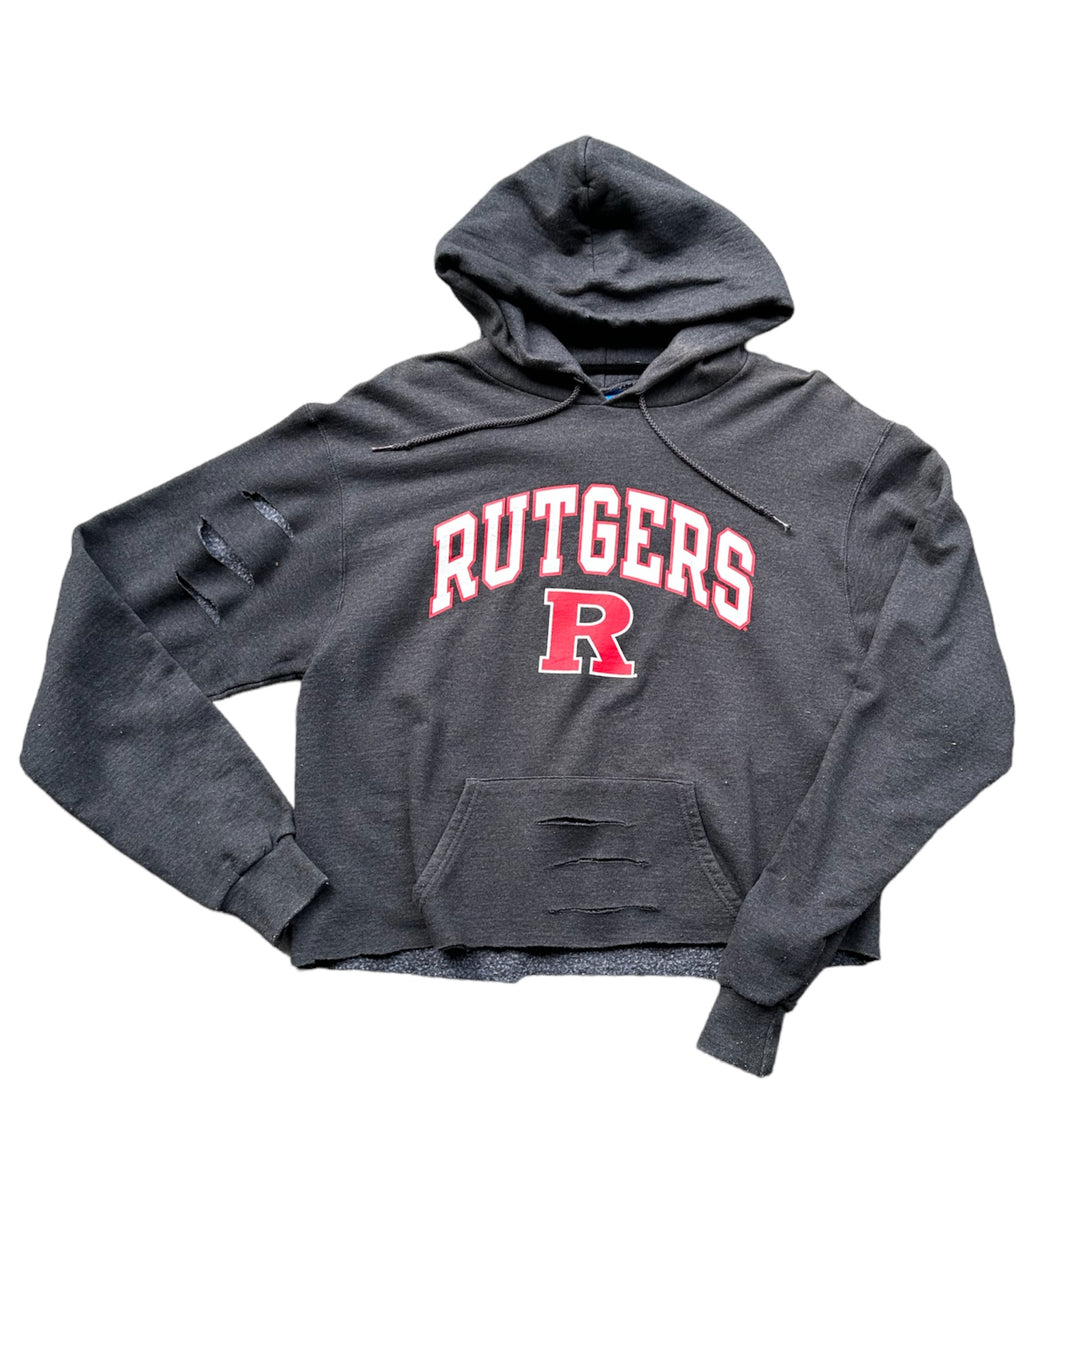 Rutgers Vintage Cut & Distressed Sweatshirt